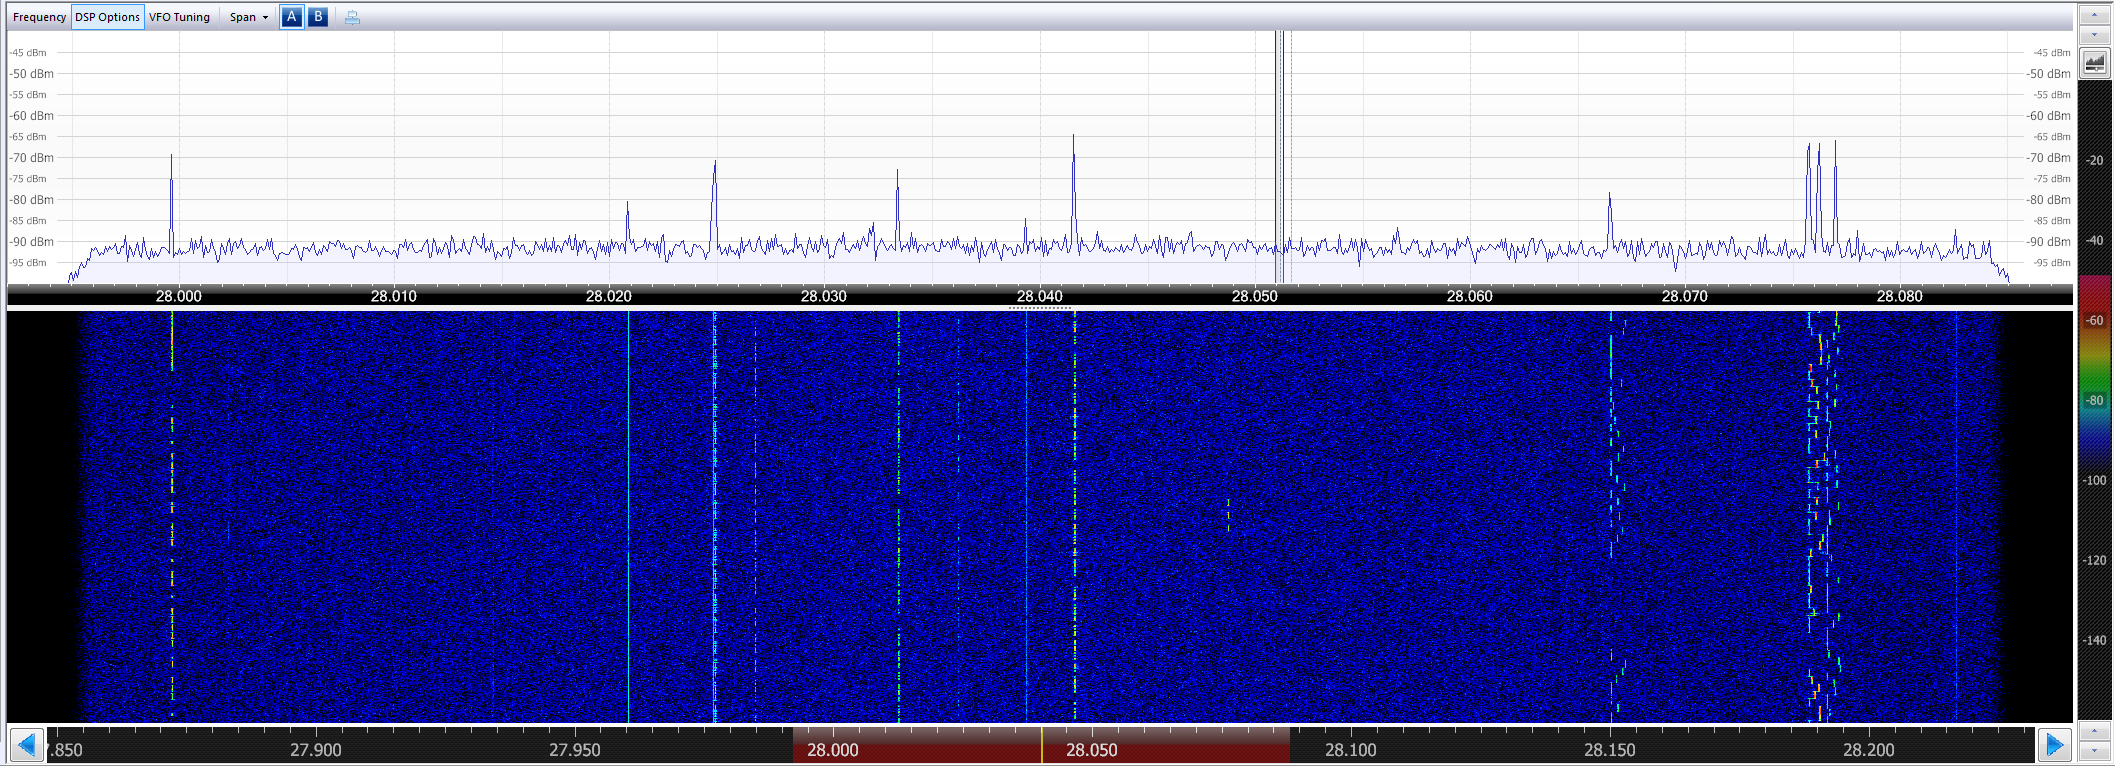 SK6OSO 23cm EME spectrum July 14, 2013